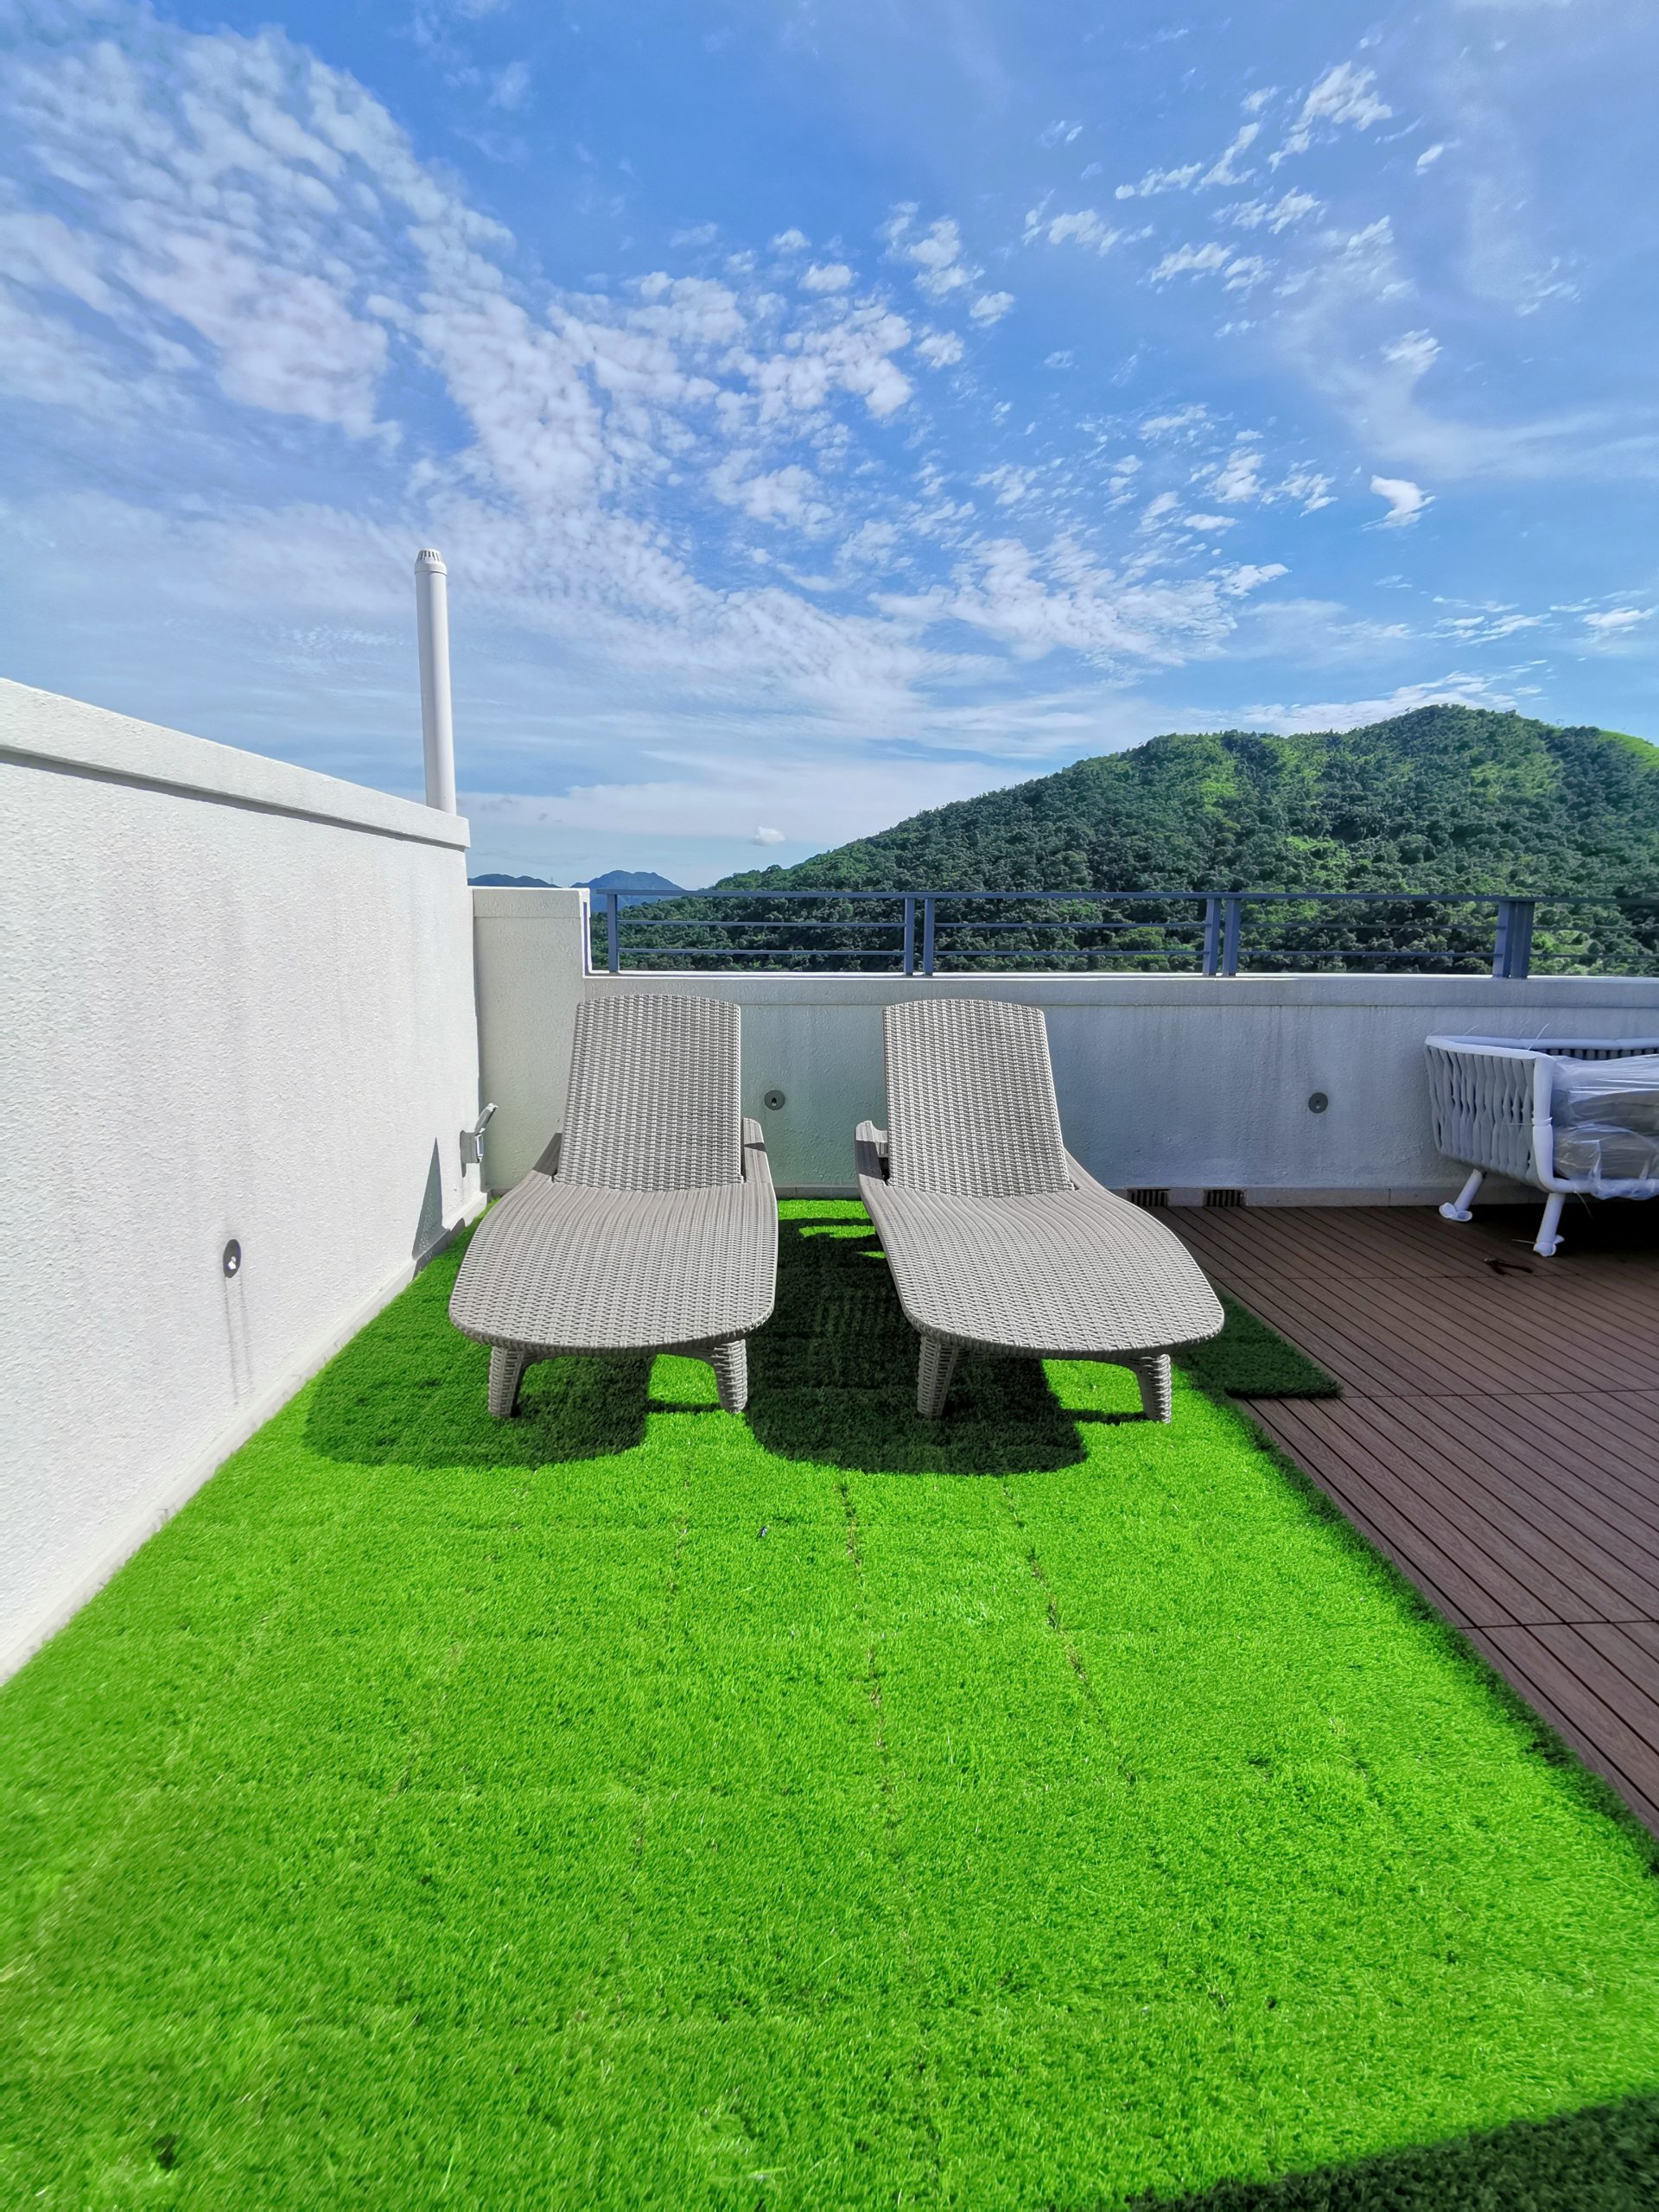 hongkong rooftop Newtechwood grass-tiles-deck tiles eco